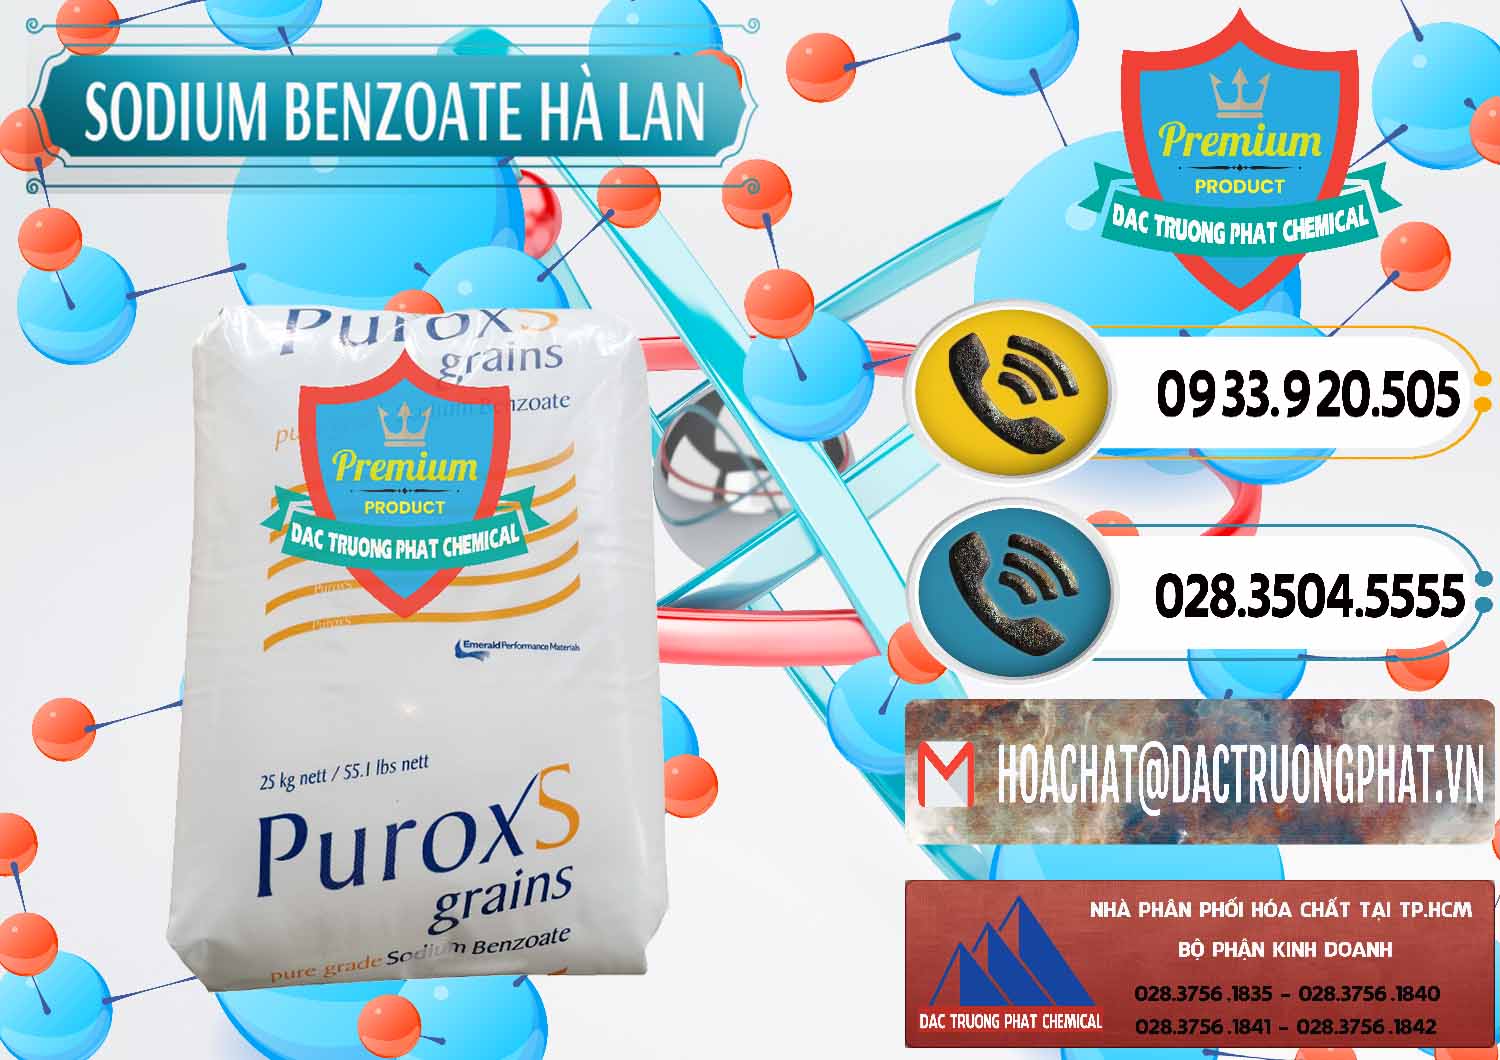 Chuyên kinh doanh - bán Sodium Benzoate - Mốc Bột Puroxs Hà Lan Netherlands - 0467 - Chuyên kinh doanh - cung cấp hóa chất tại TP.HCM - hoachatdetnhuom.vn